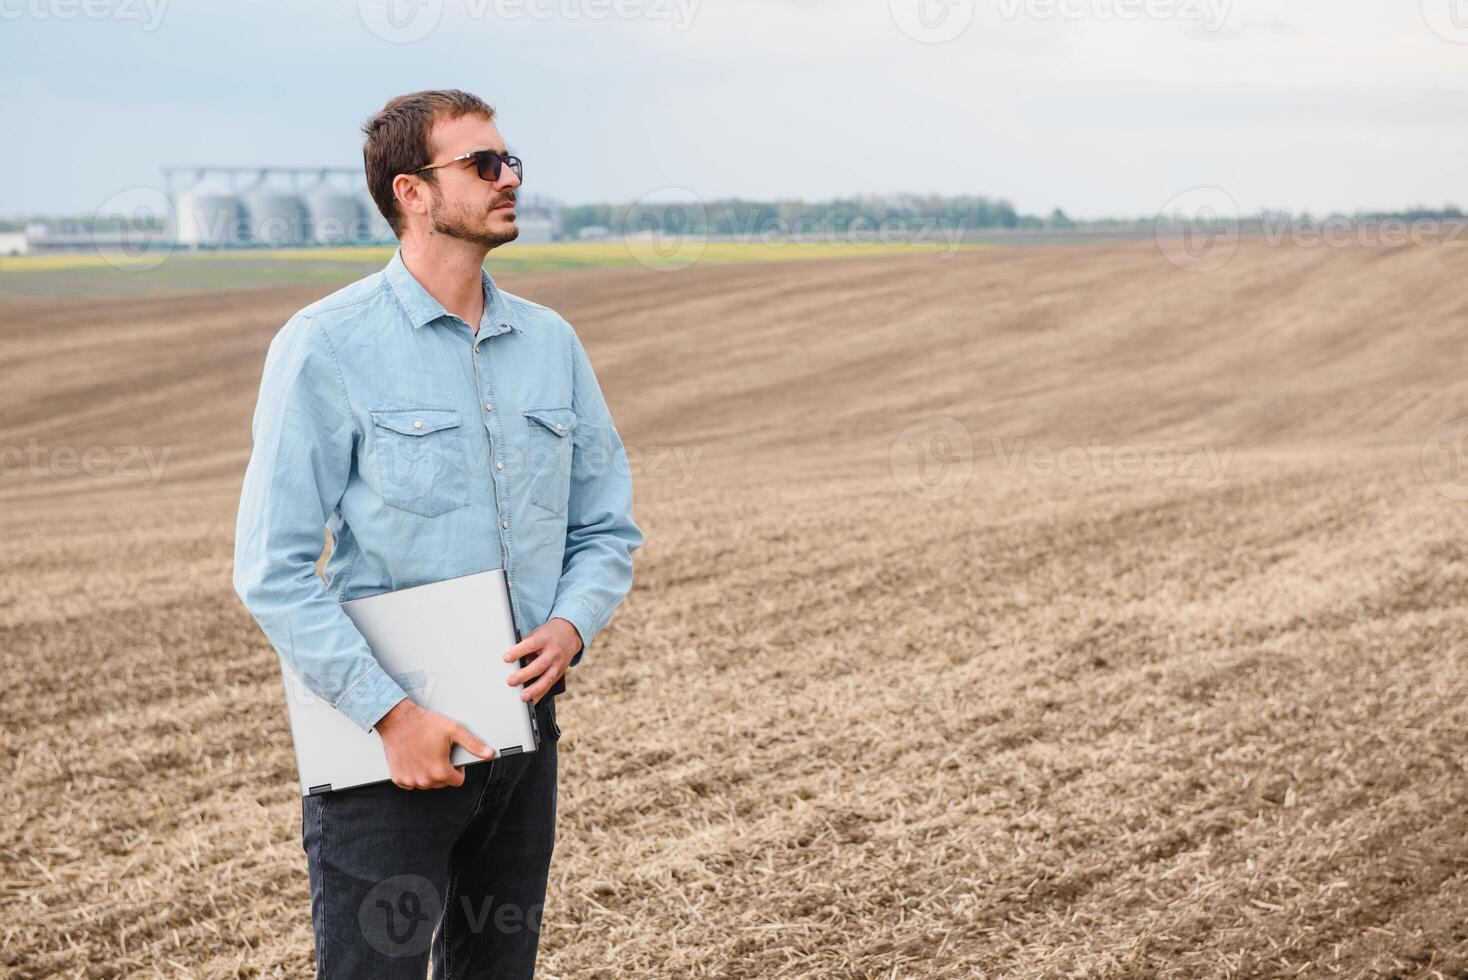 récolte concept. agriculteur dans une champ avec une portable sur une Contexte de une agricole silos pour espace de rangement et séchage de céréales, blé photo